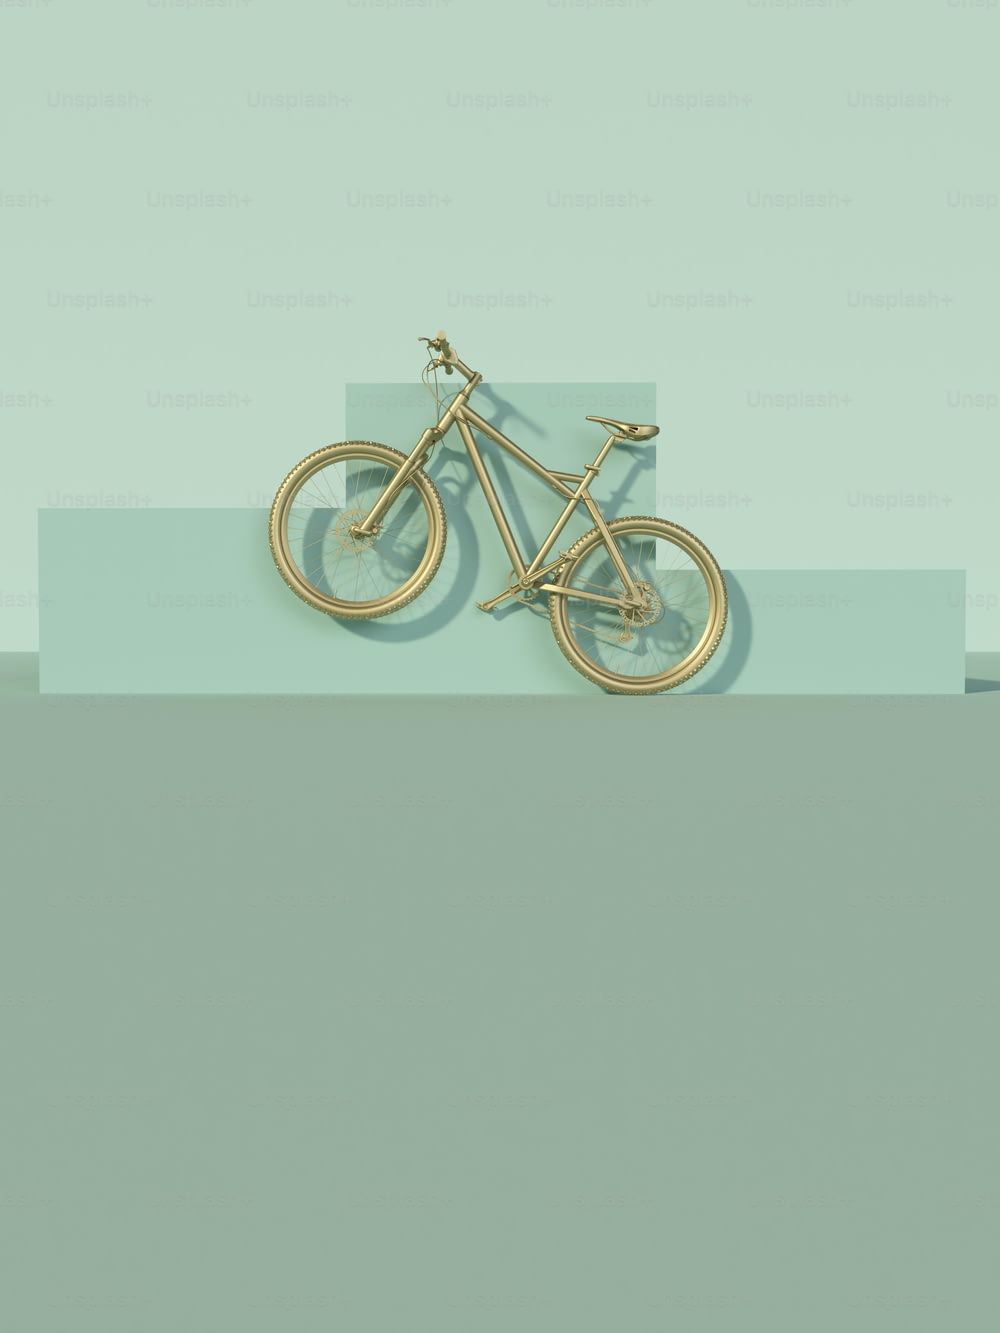 Un vélo doré est représenté sur un fond bleu et vert